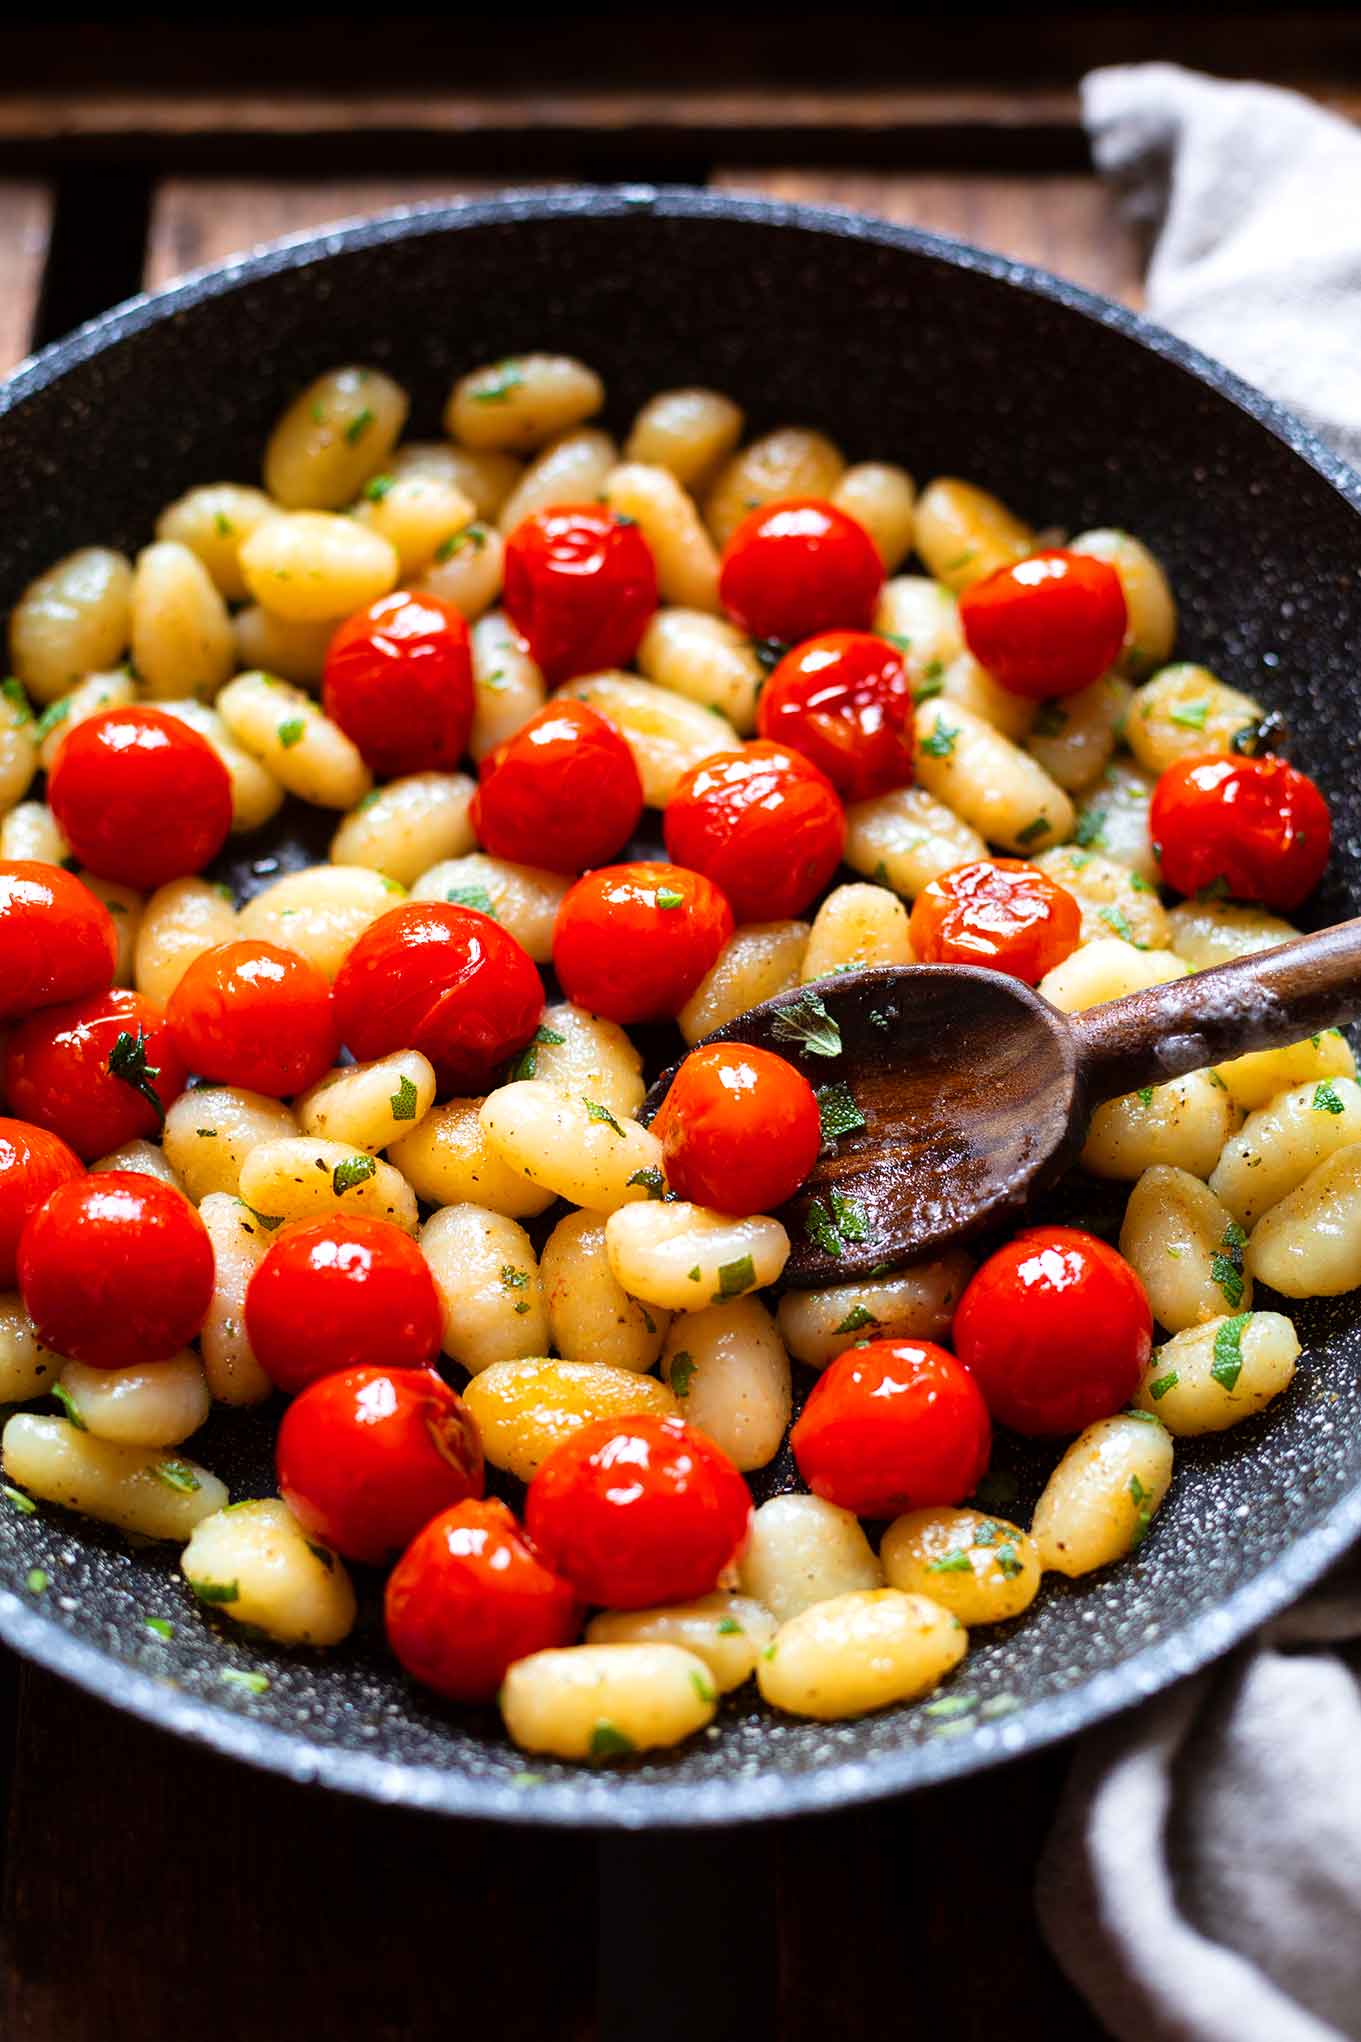 Salbei-Gnocchi mit gebratenen Tomaten, Butter und Olivenöl. Dieses super einfache 5 Zutaten Rezept ist unser liebster Feierabend-Quickie! Kochkarussell - dein Foodblog für schnelle & einfache Feierabendküche.